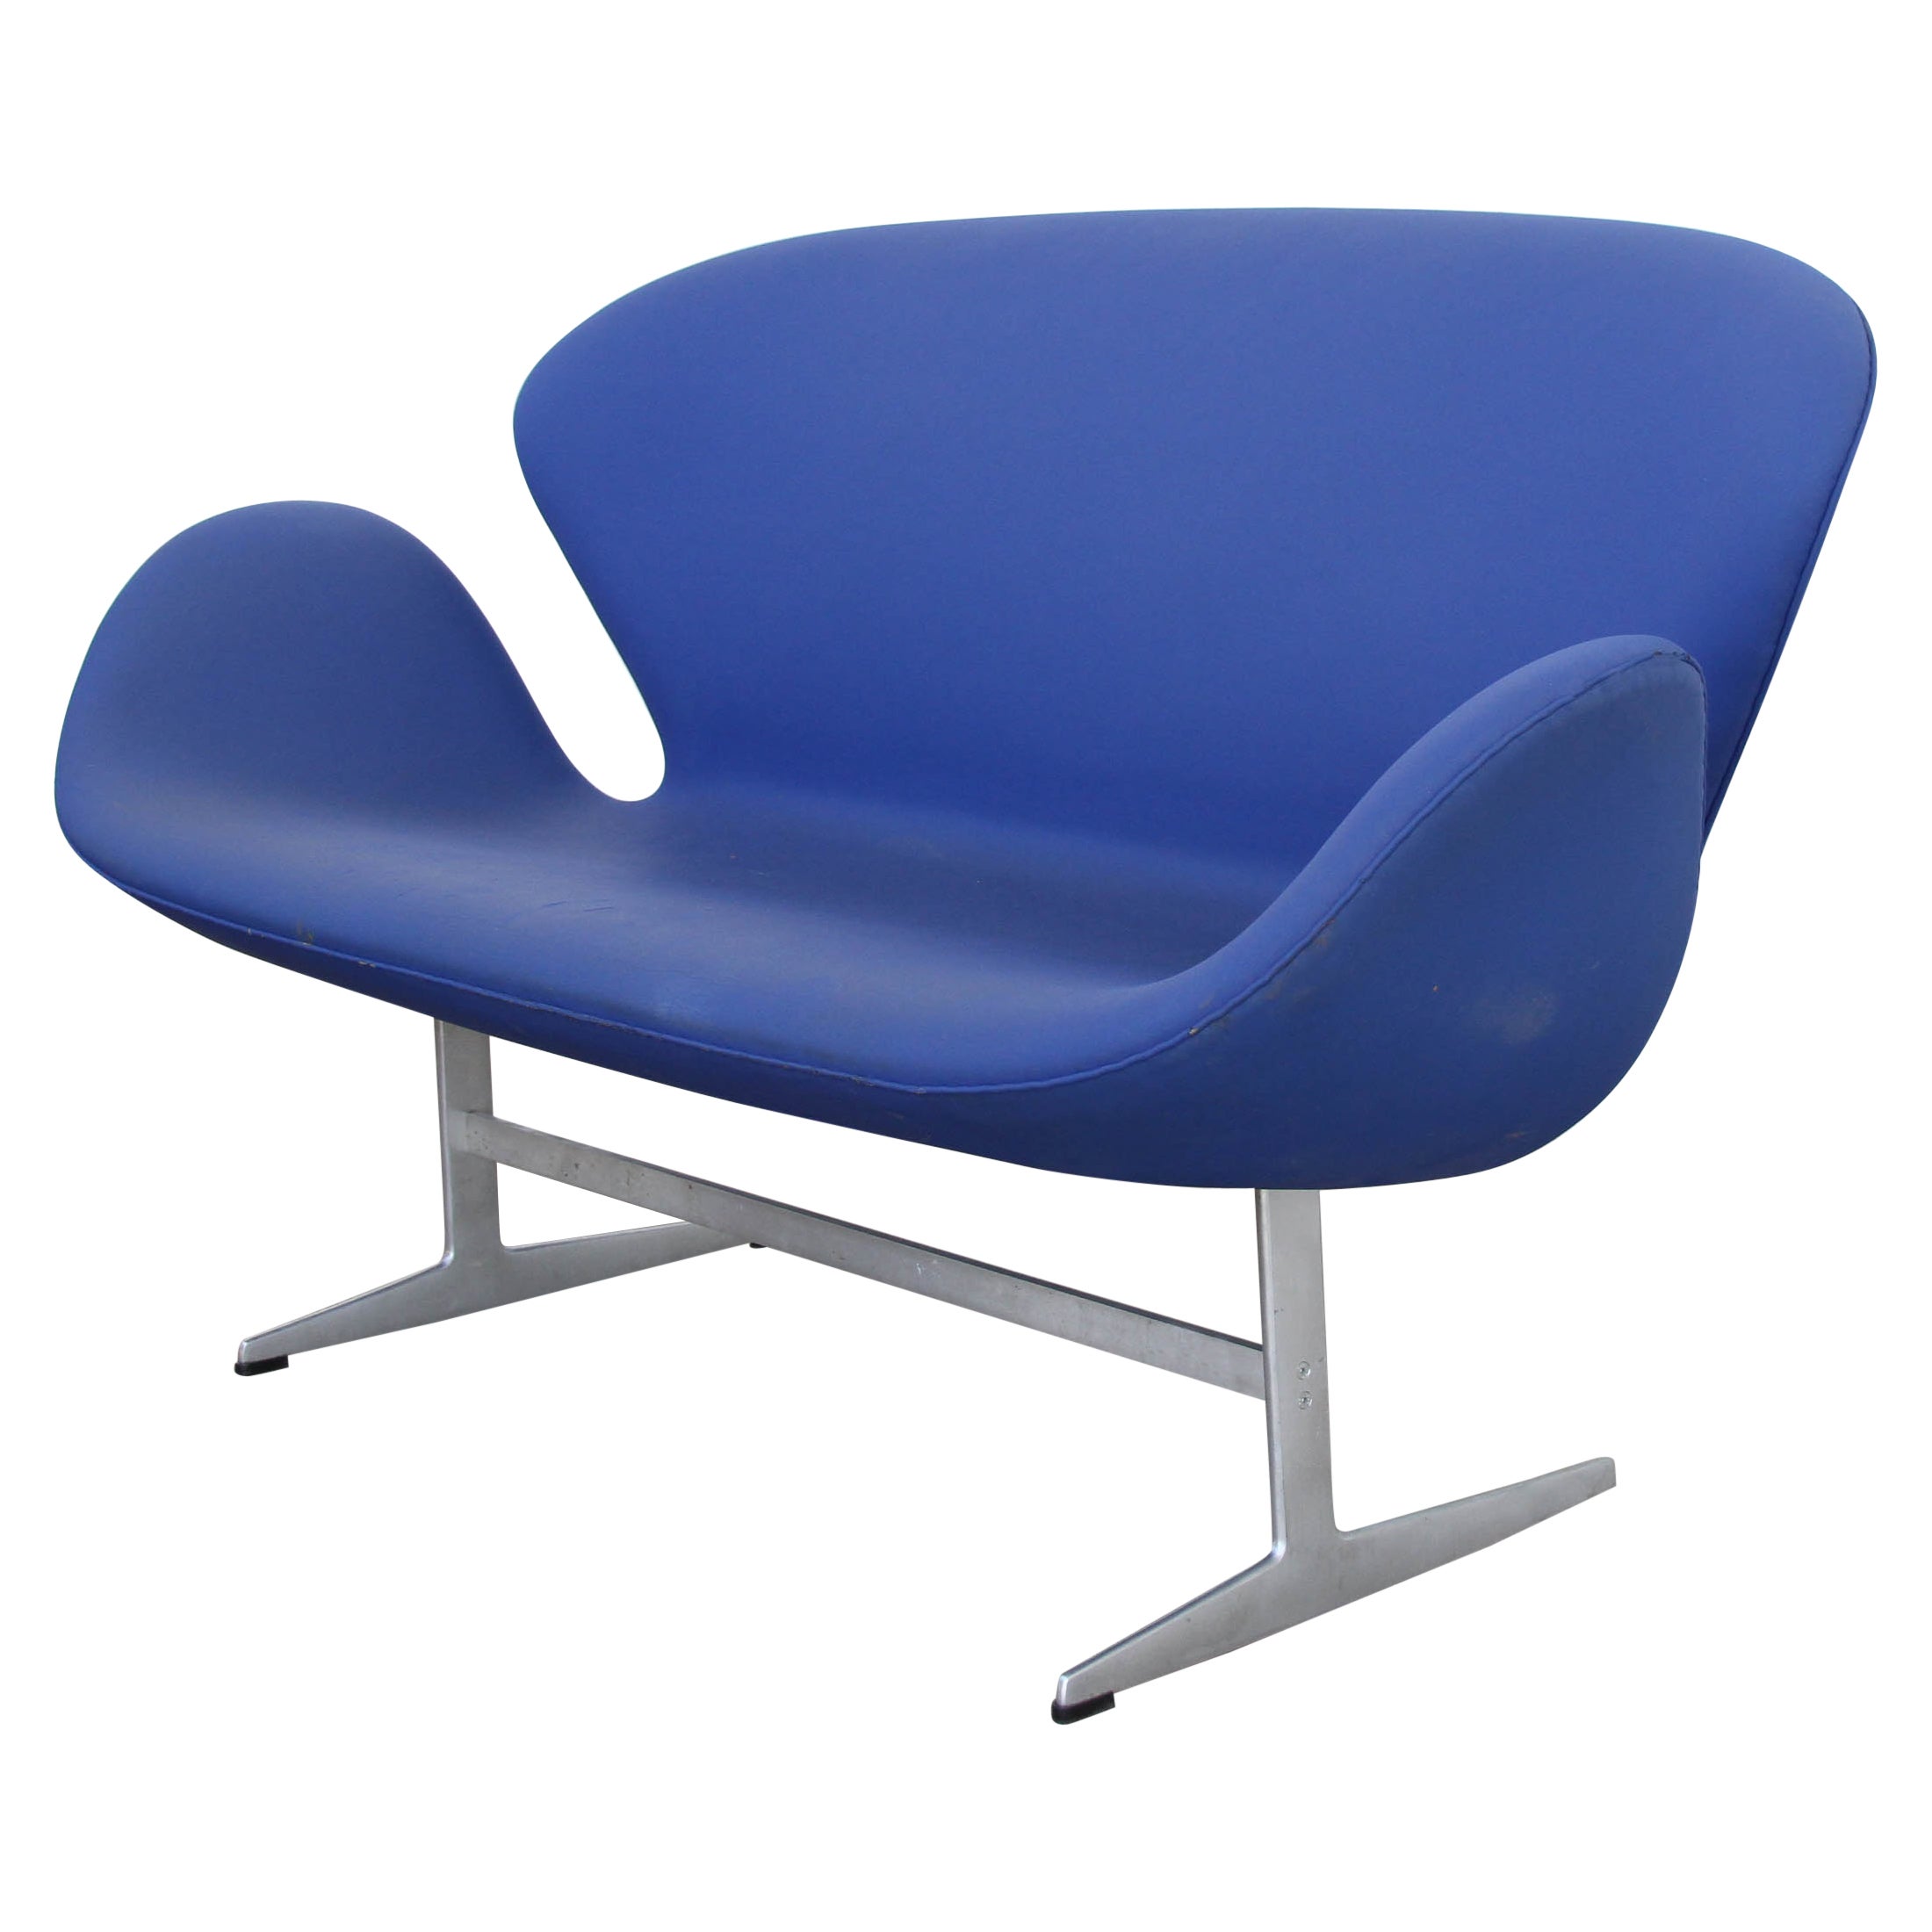 1 Arne Jacobsen Schwan-Sofa